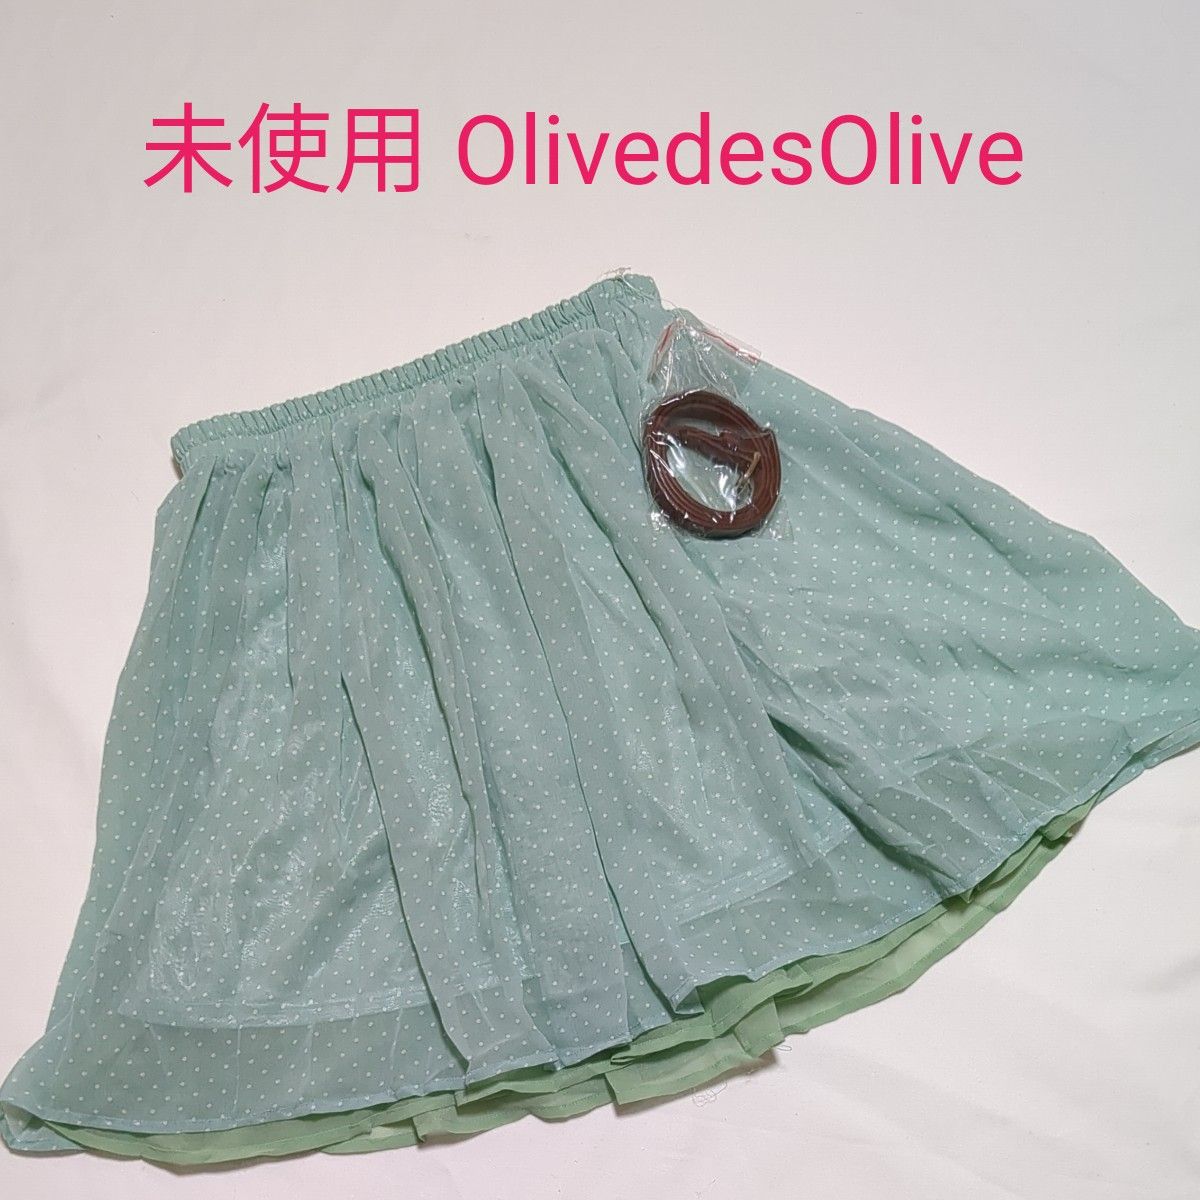 新品 未使用 オリーブデオリーブ OlivedesOlive 水玉 ドット グリーン系 ミニスカート Mサイズ ベルト付き